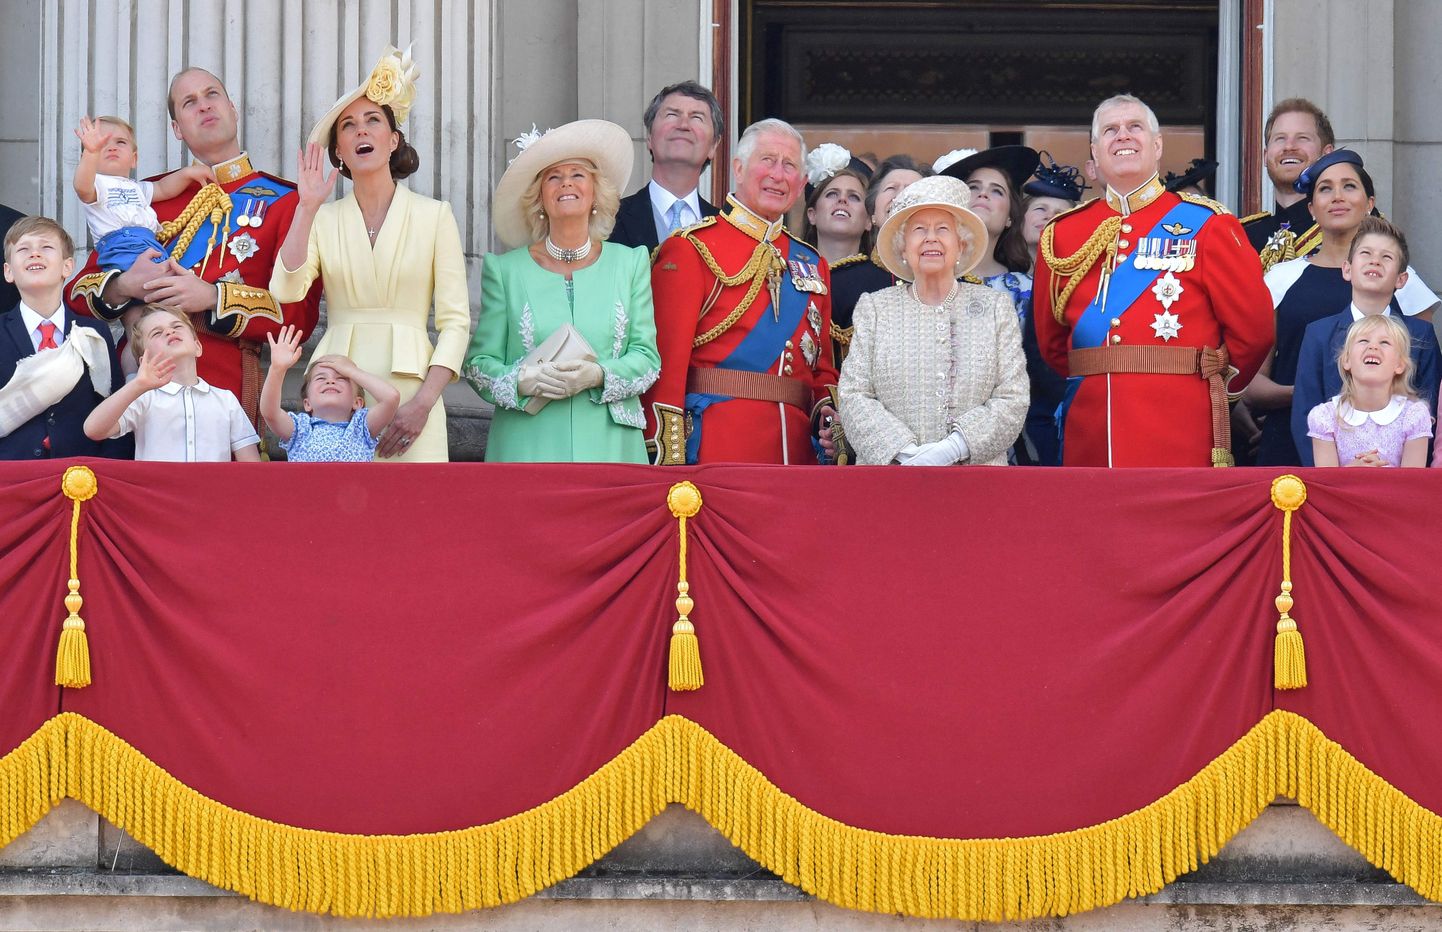 Briti kuninglik perekond 2019. aastal.